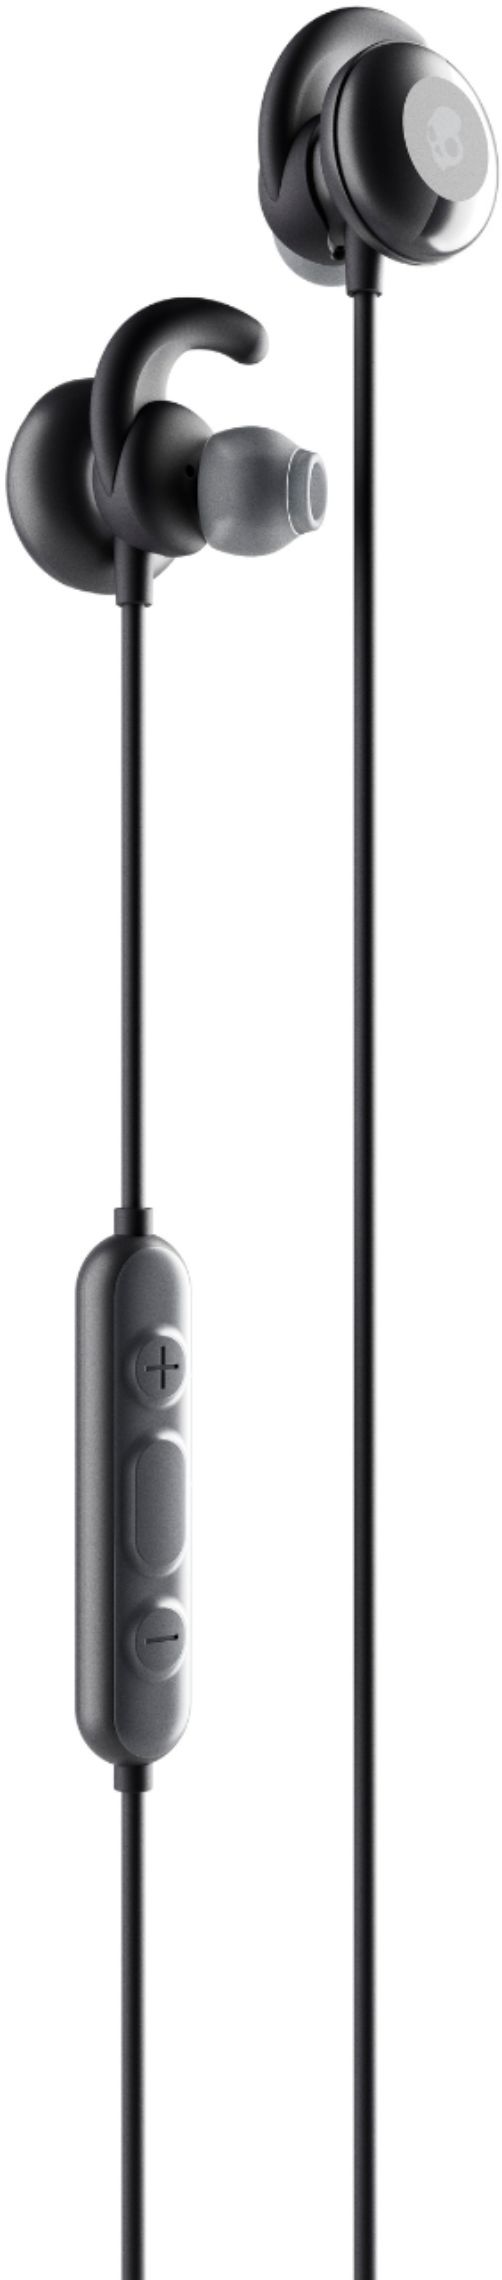 Best Buy: Skullcandy Method Active Wireless Sport Earbuds Black 